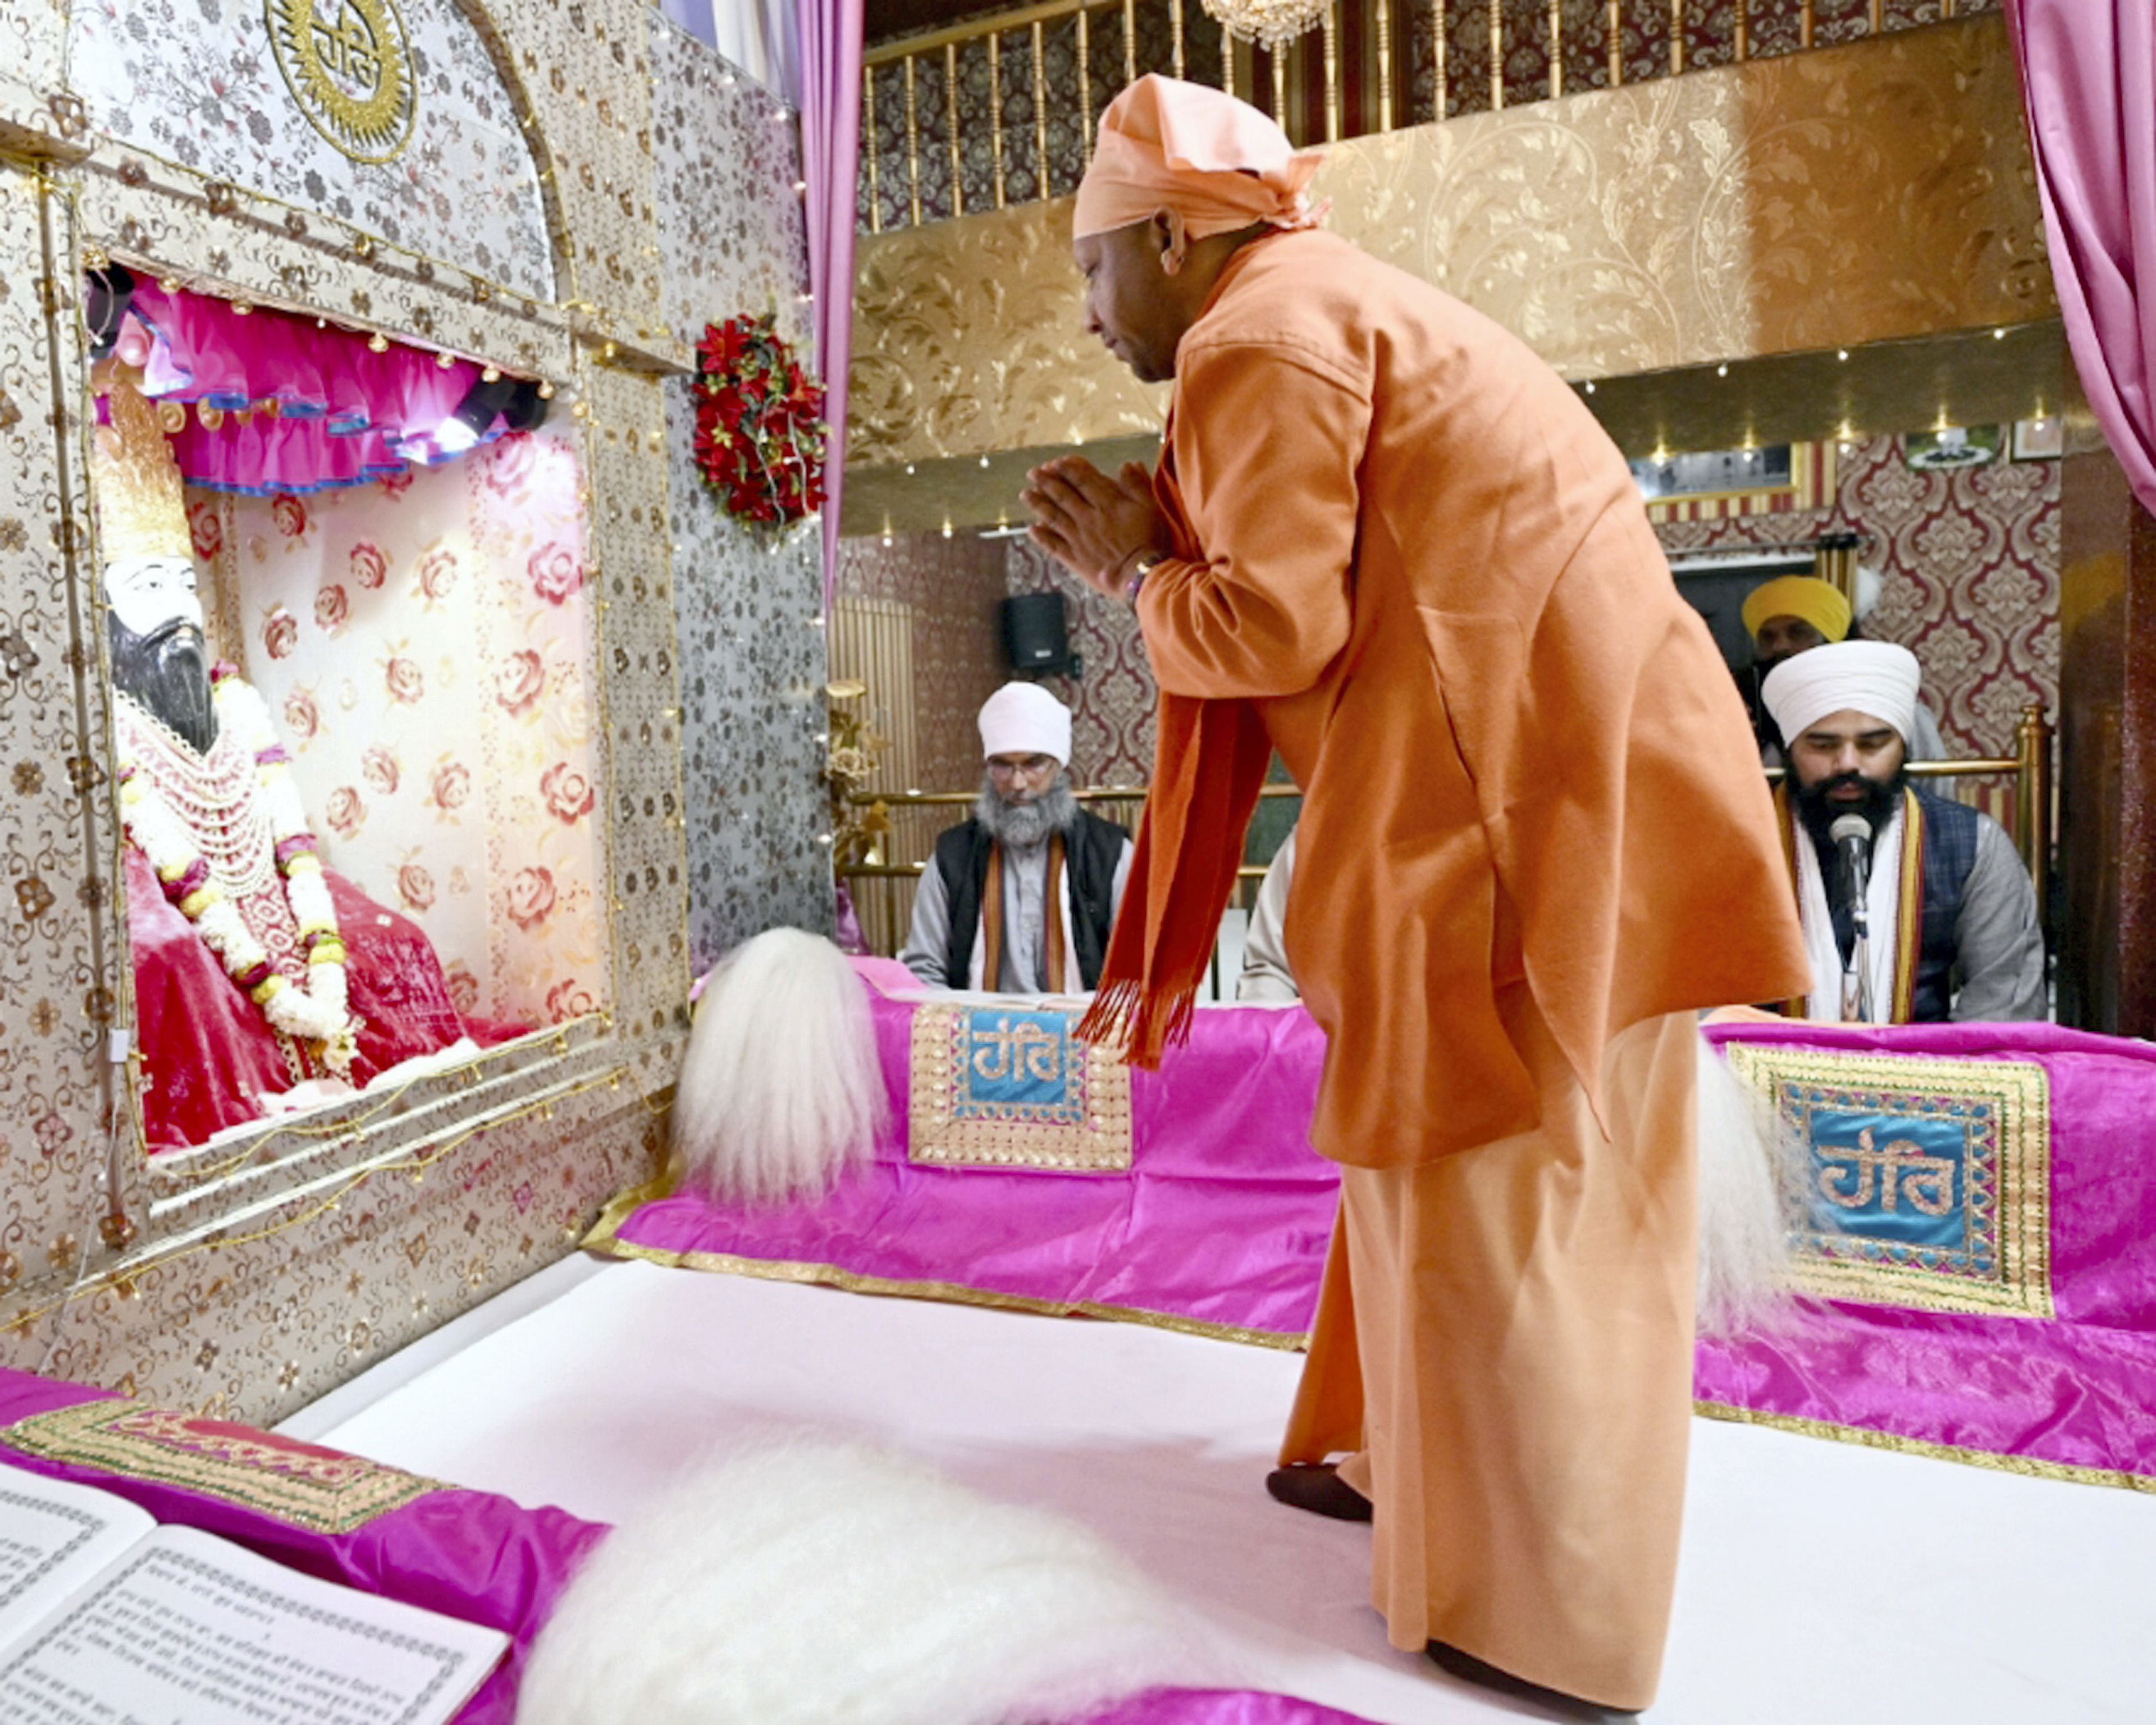 cm adityanath offers prayers at ravidas temple in varanasi